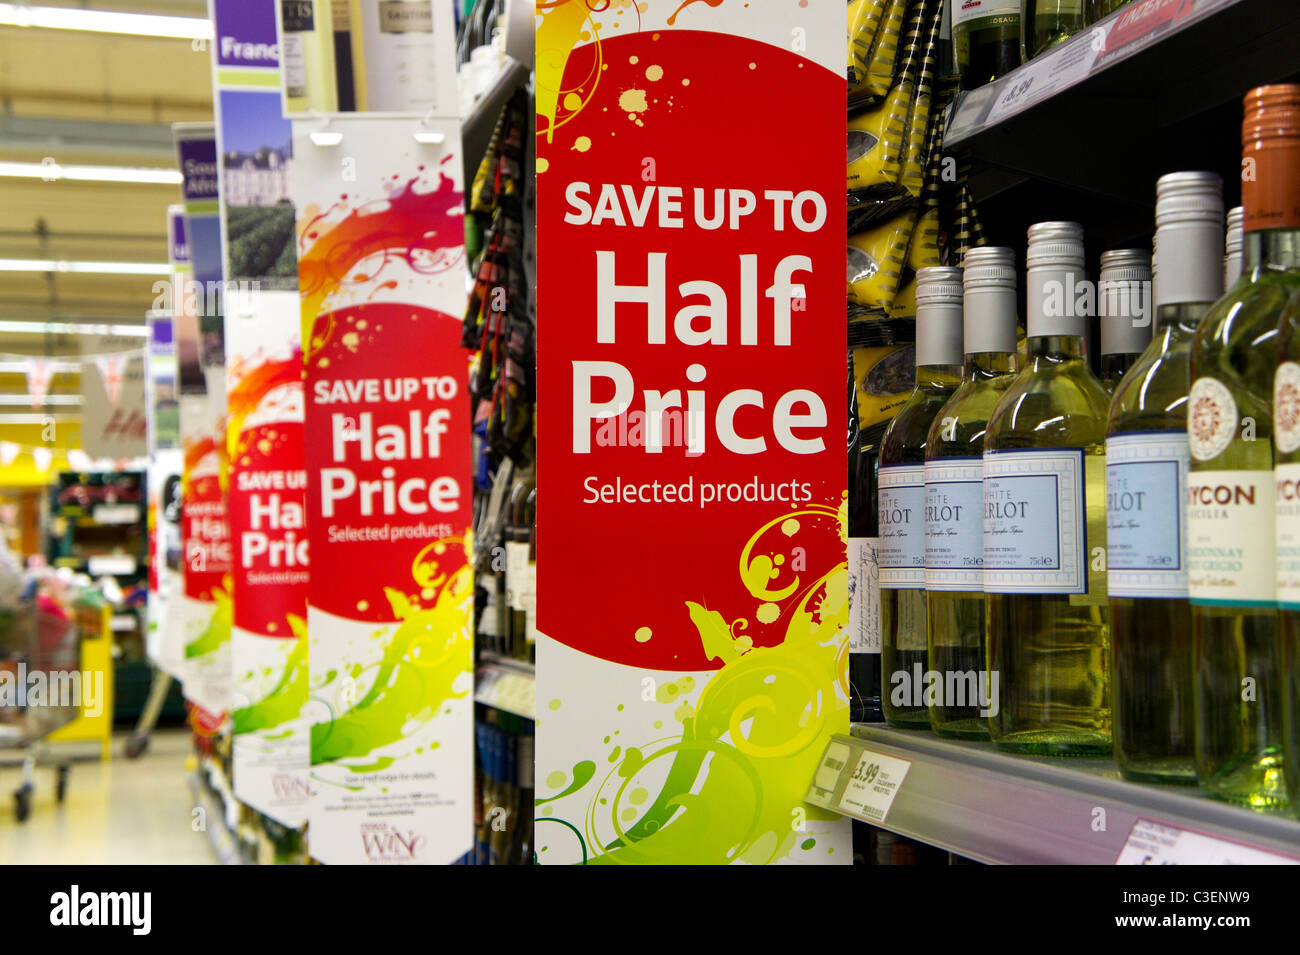 A mitad de precio oferta de vino en un supermercado británico Foto de stock